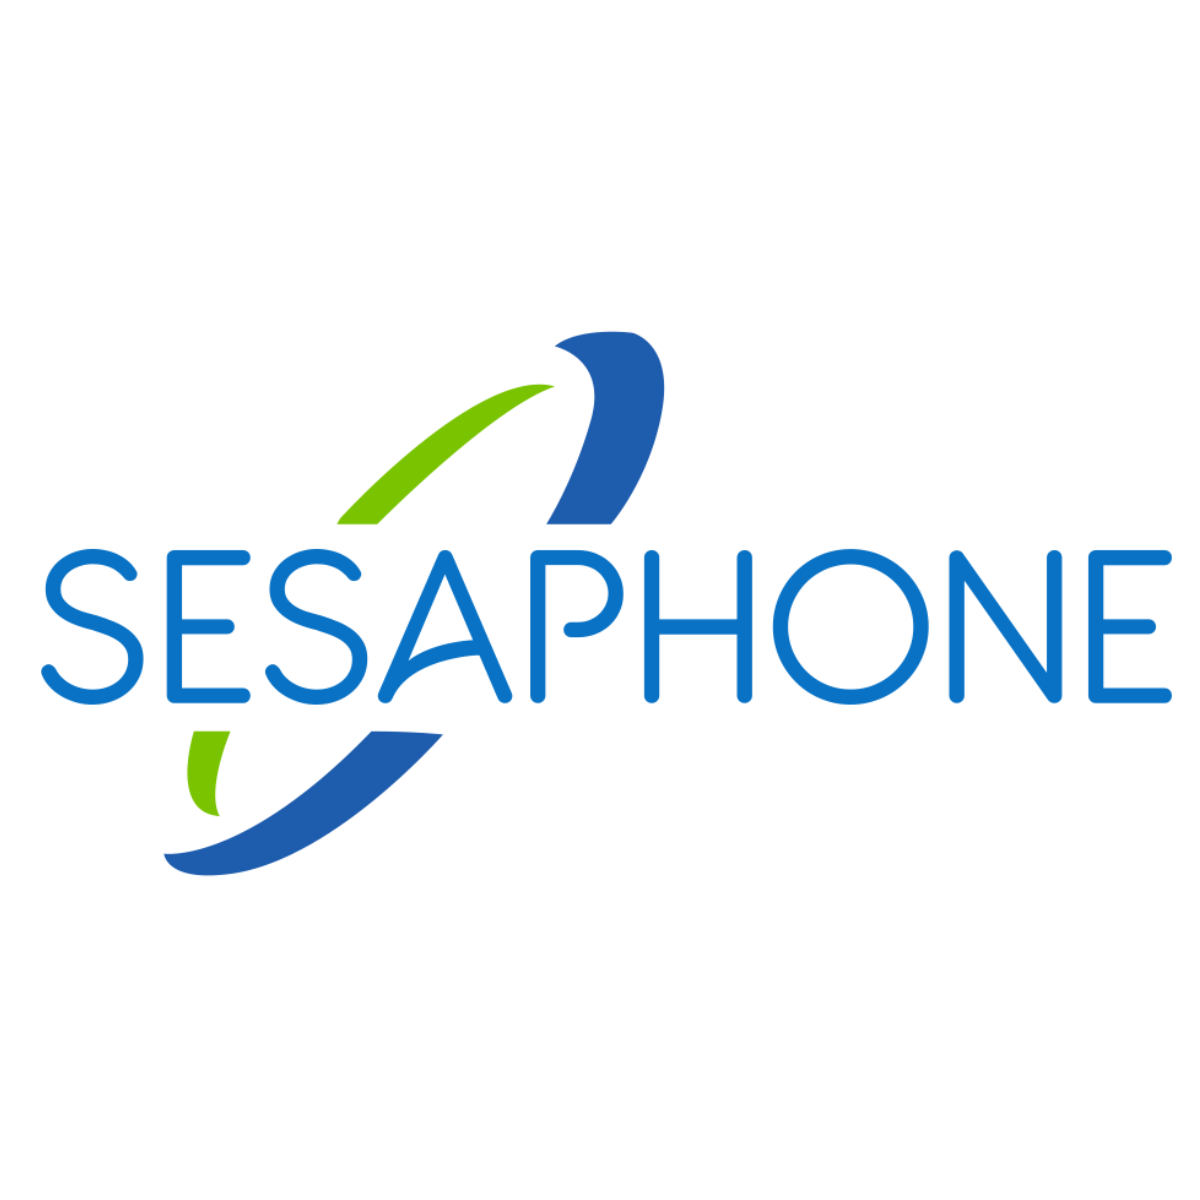 sesaphone (1)